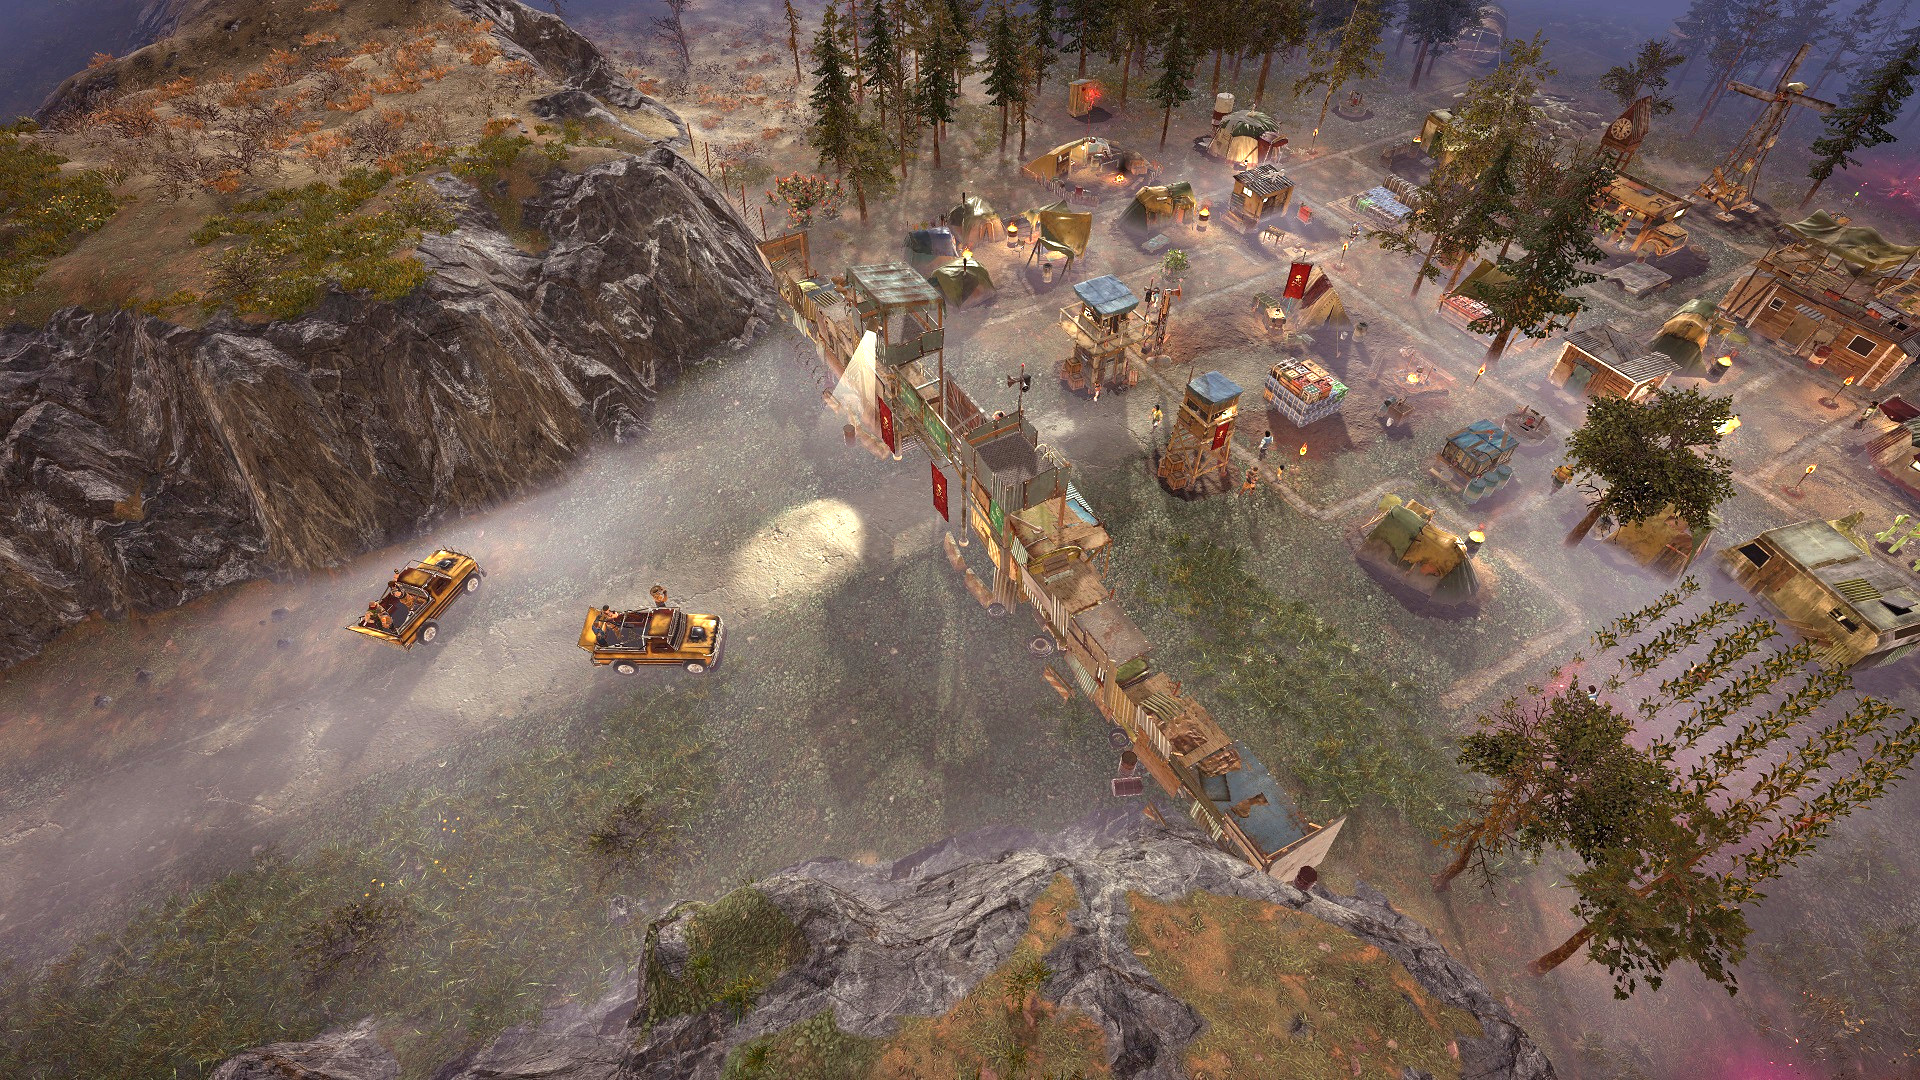 Najlepsze gry budujące miasta: przetrwanie następstw. Obraz pokazuje zużytą osadę w oczyszczonym lesie, z kilkoma samochodami w pobliżu